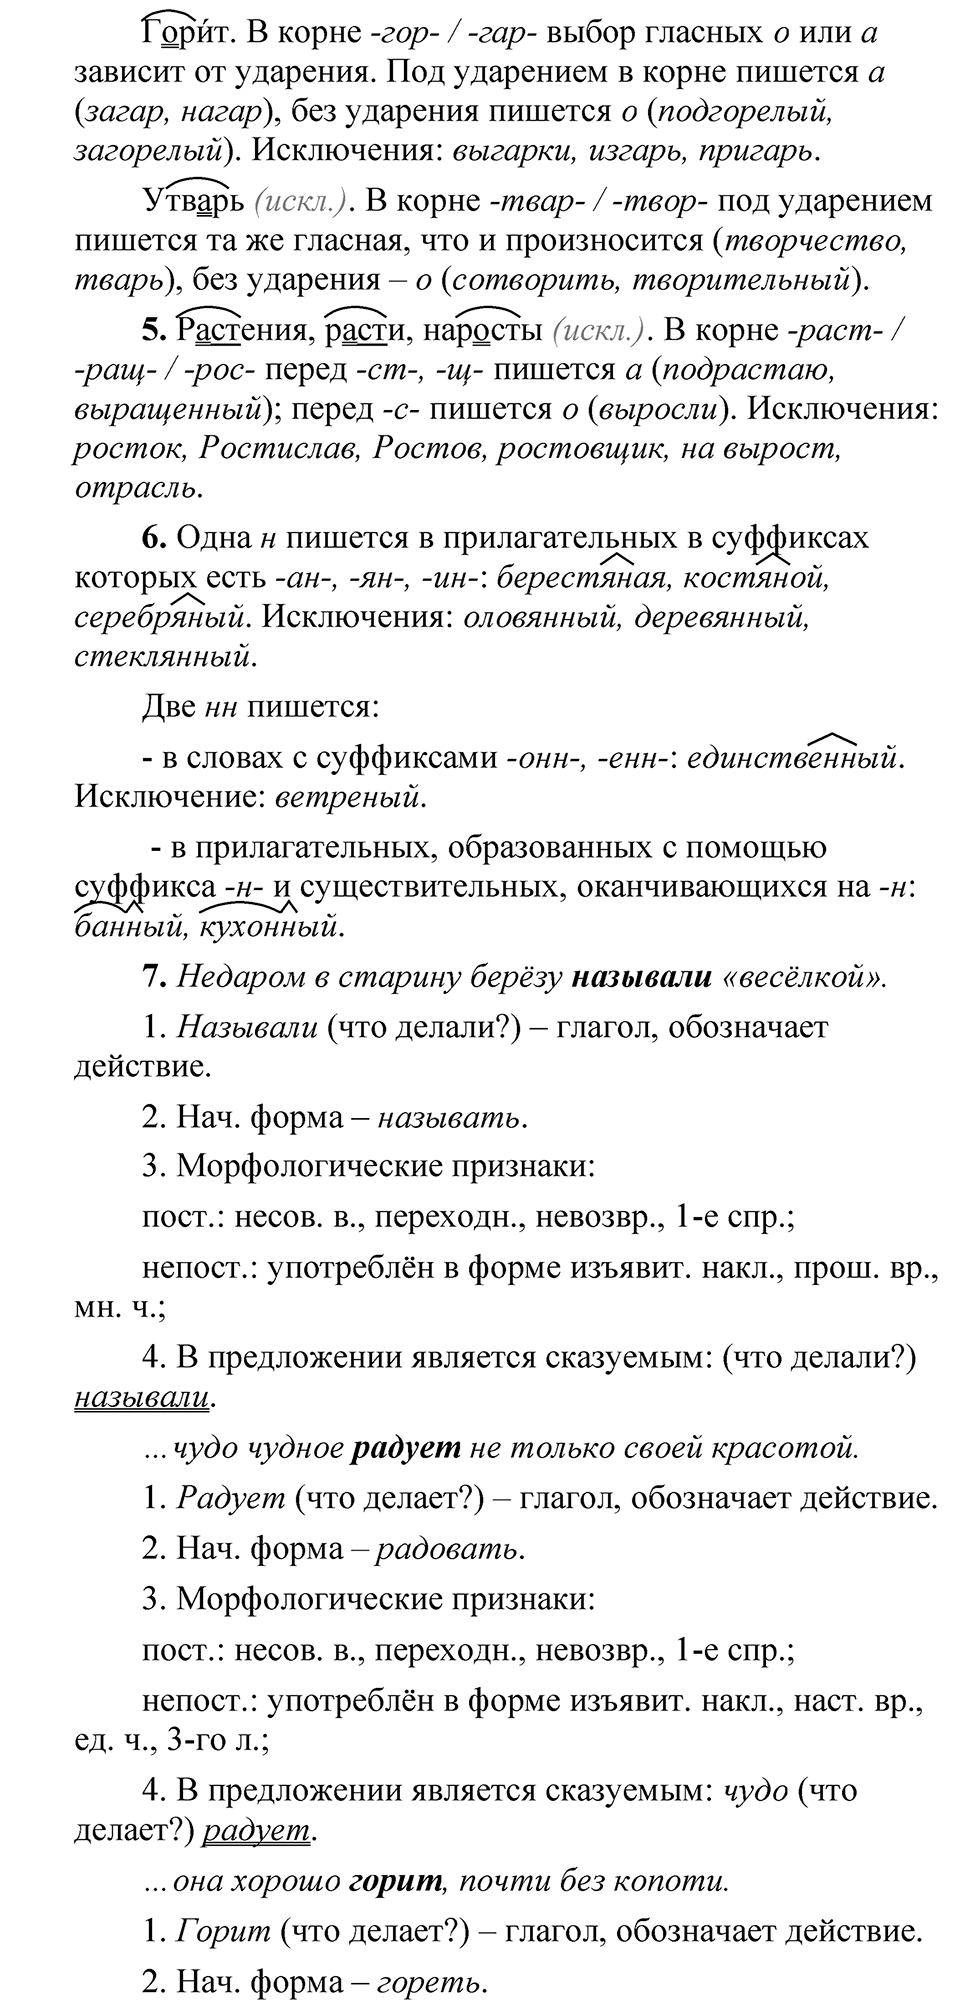 страница 263 Анализируем текст русский язык 5 класс Быстрова, Кибирева 2 часть 2021 год